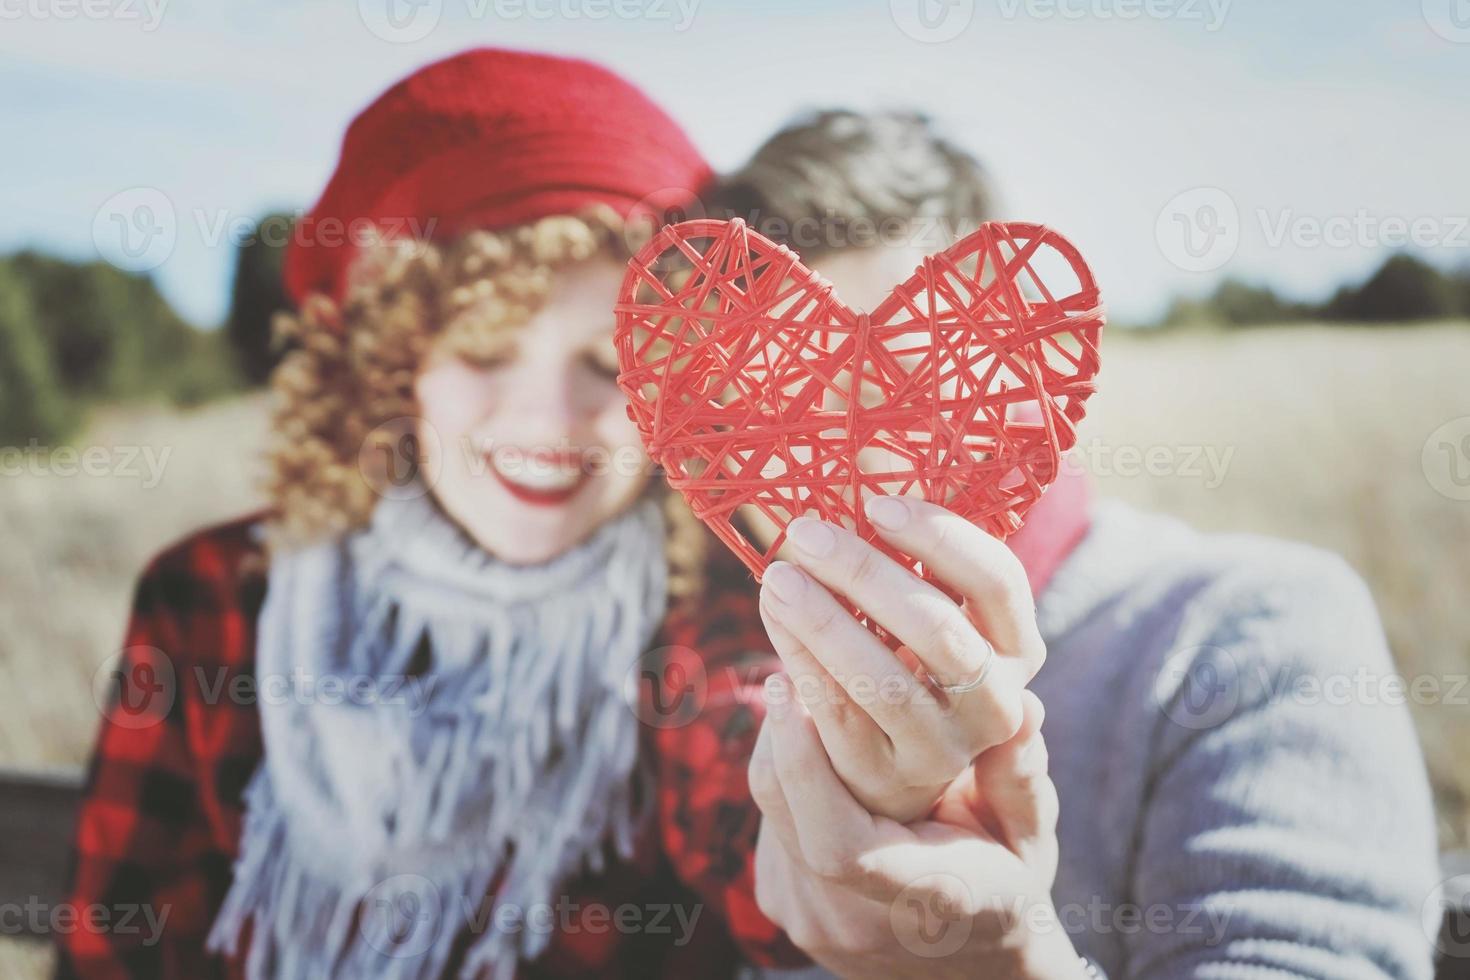 härlig närbild av ett vackert rött hjärta som ryms av ett romantiskt ungt par i kärlek i en trevlig bokeh som bakgrund utomhus. det påminner kärlek eller hälsovård foto